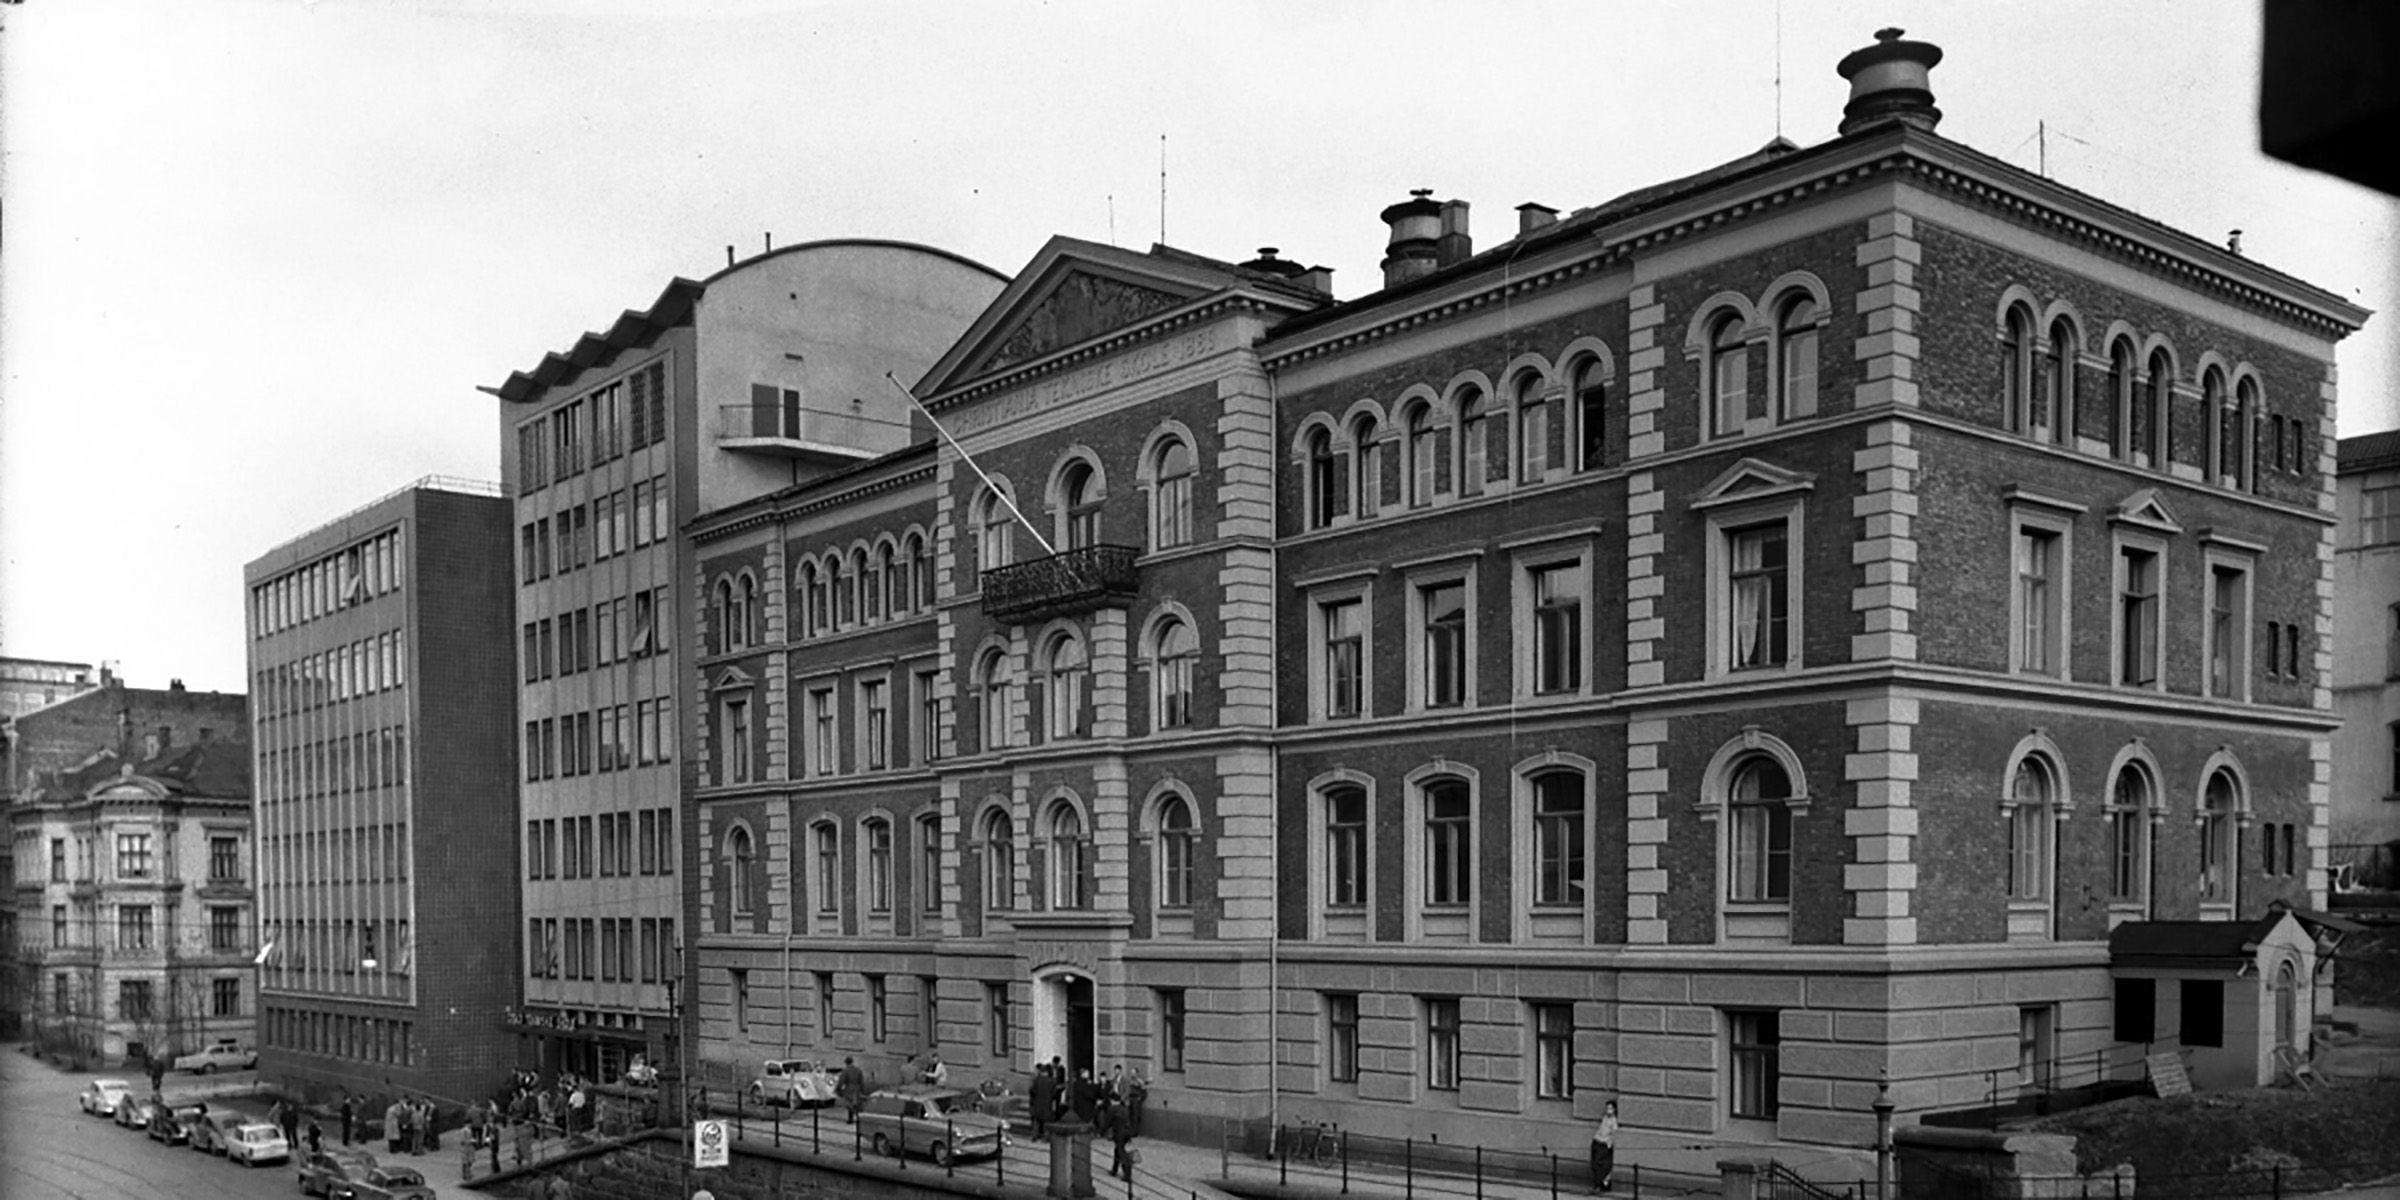 Bilde av Cort Adlers gate 30 i Oslo. Bildet er tatt på begynnelsen av 1960-tallet. Øverst på bygningen står det: Christiania tekniske Skole 1889.